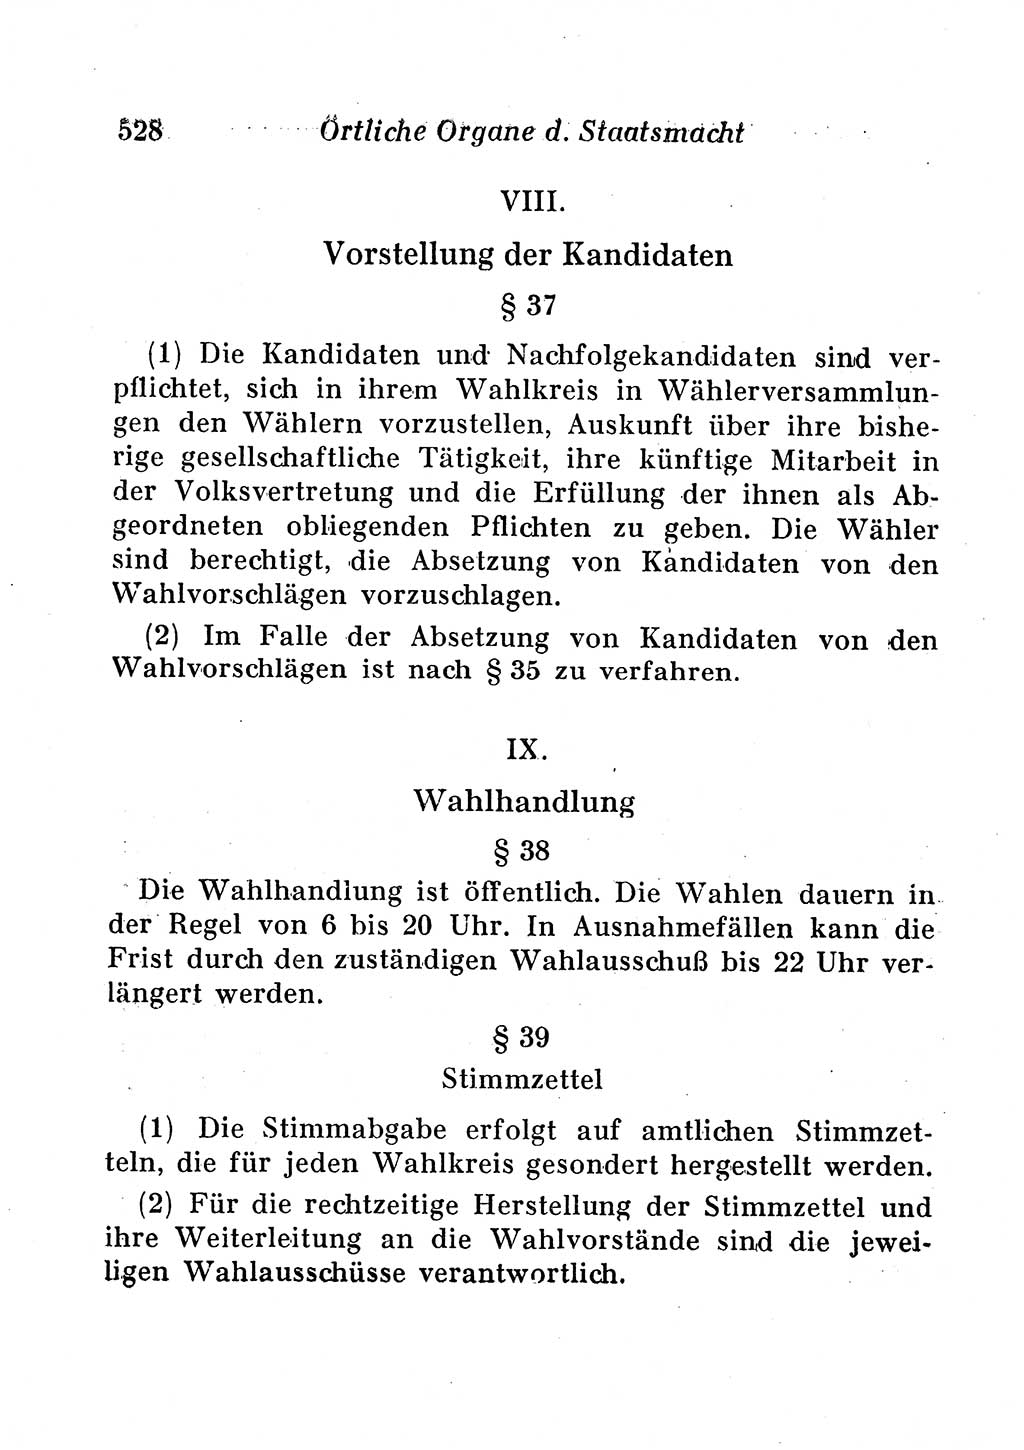 Staats- und verwaltungsrechtliche Gesetze der Deutschen Demokratischen Republik (DDR) 1958, Seite 528 (StVerwR Ges. DDR 1958, S. 528)